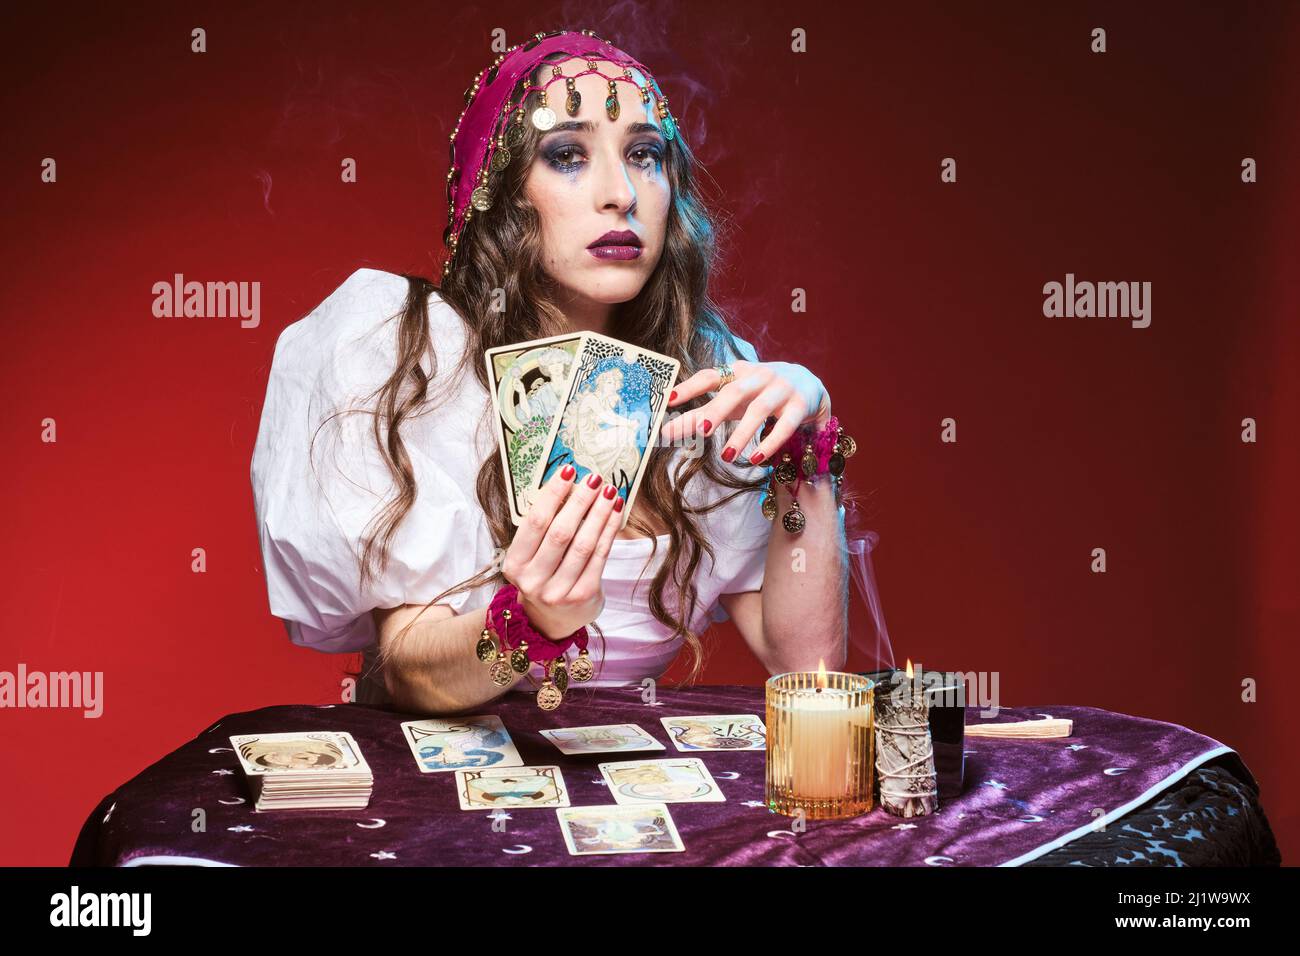 Attraente soothsayer femminile con trucco seduto al tavolo con carte tarocchi in mano contro candele brucianti e guardando la macchina fotografica Foto Stock